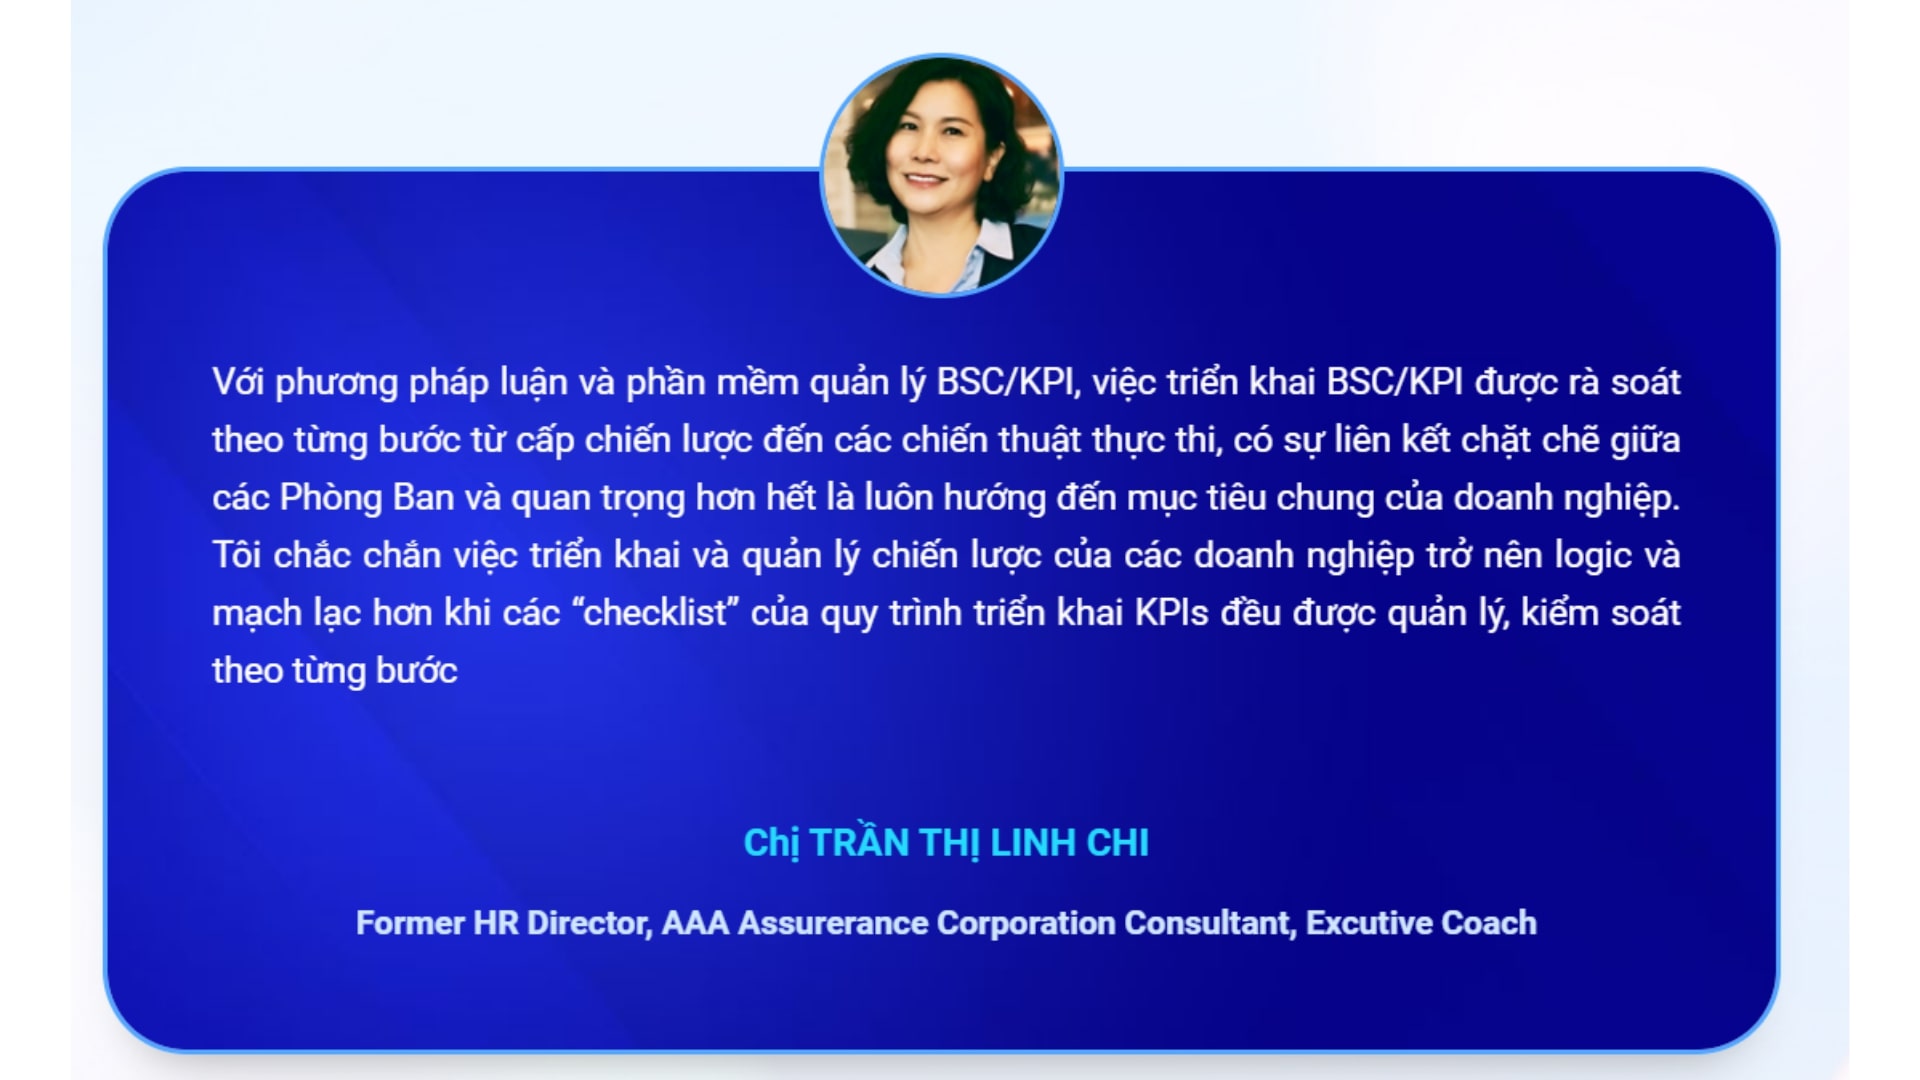 Ms Chi đánh giá cao hệ thống BSC/KPI TOPPION